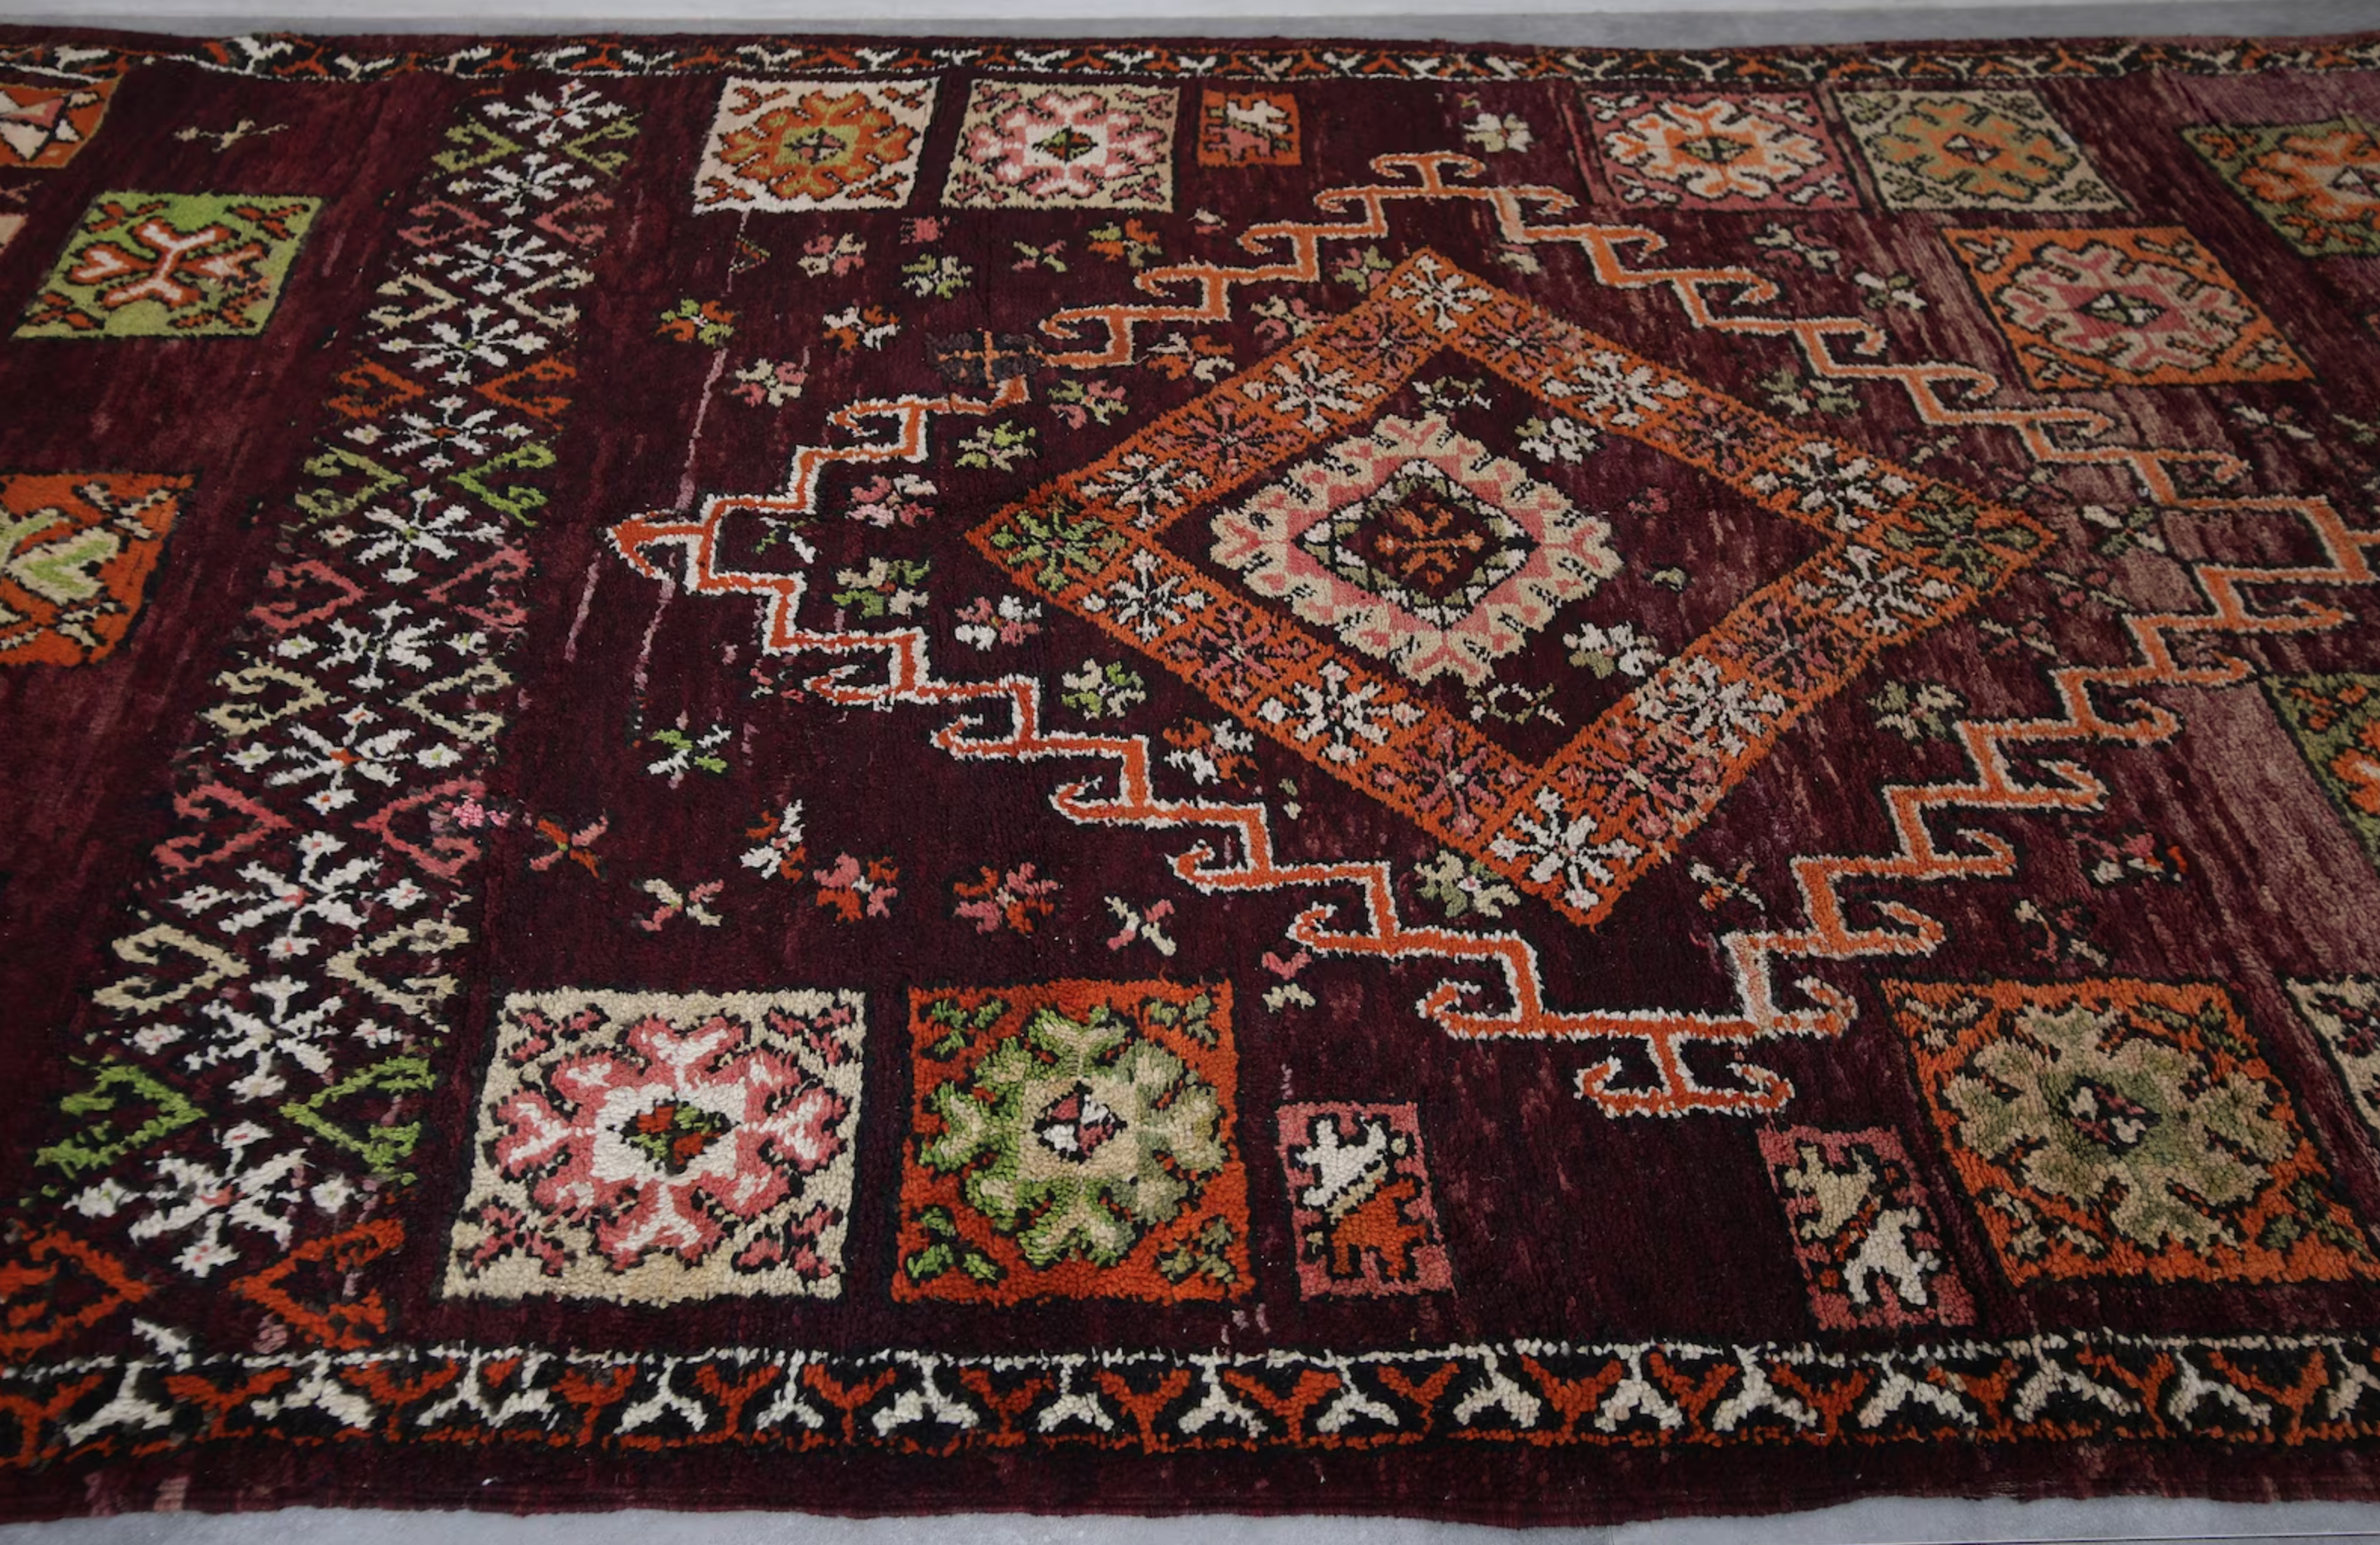 Morocco rug